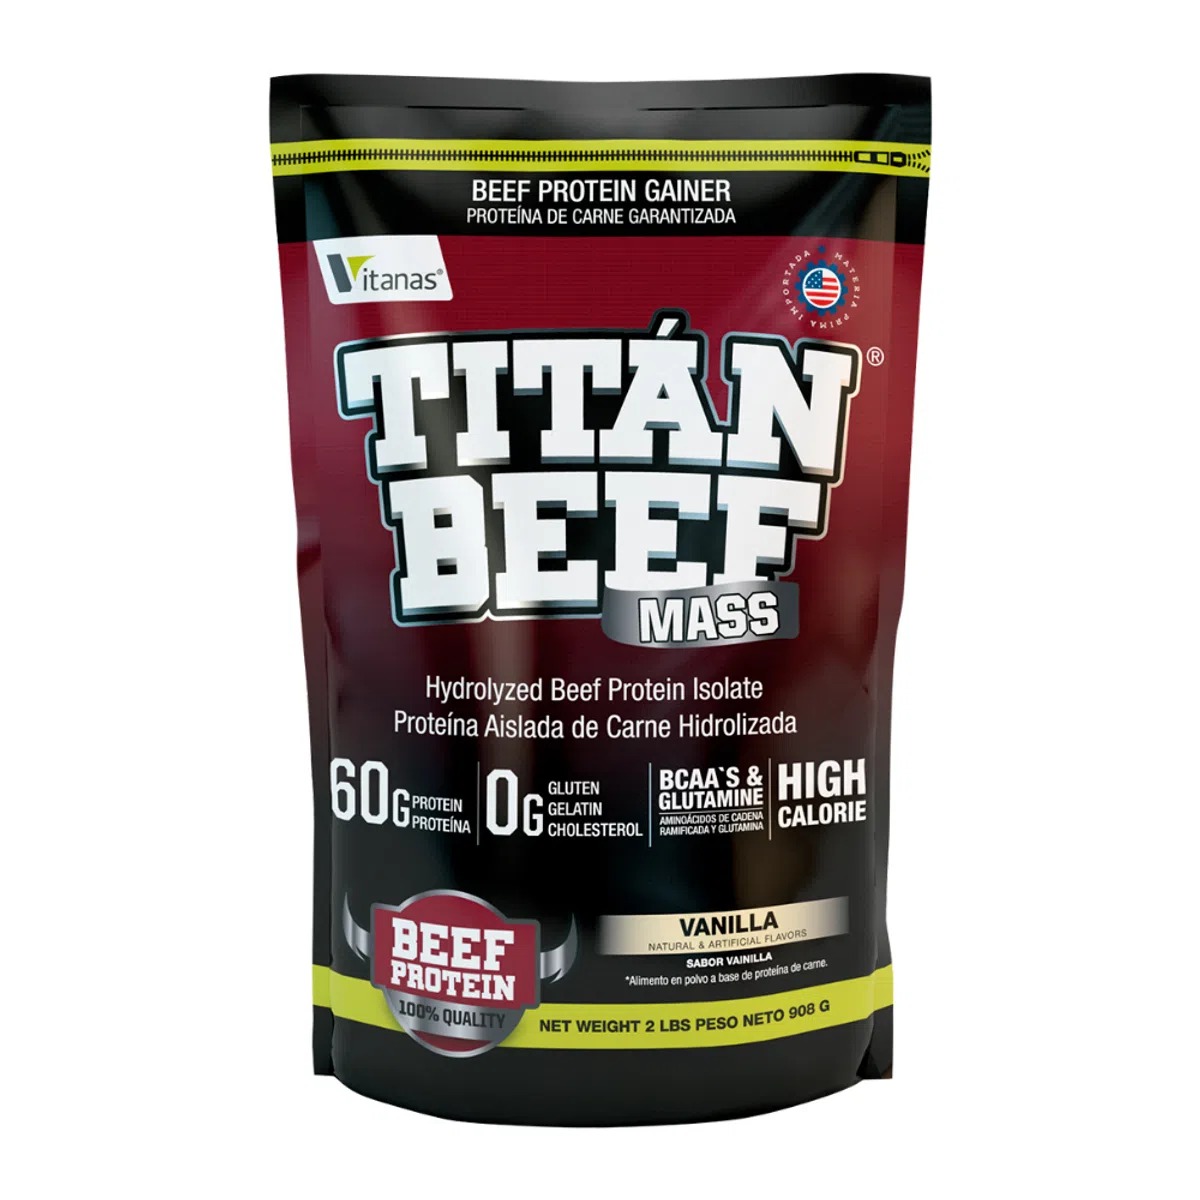 Titan beef mass 2 libras vainilla - vitanas. 